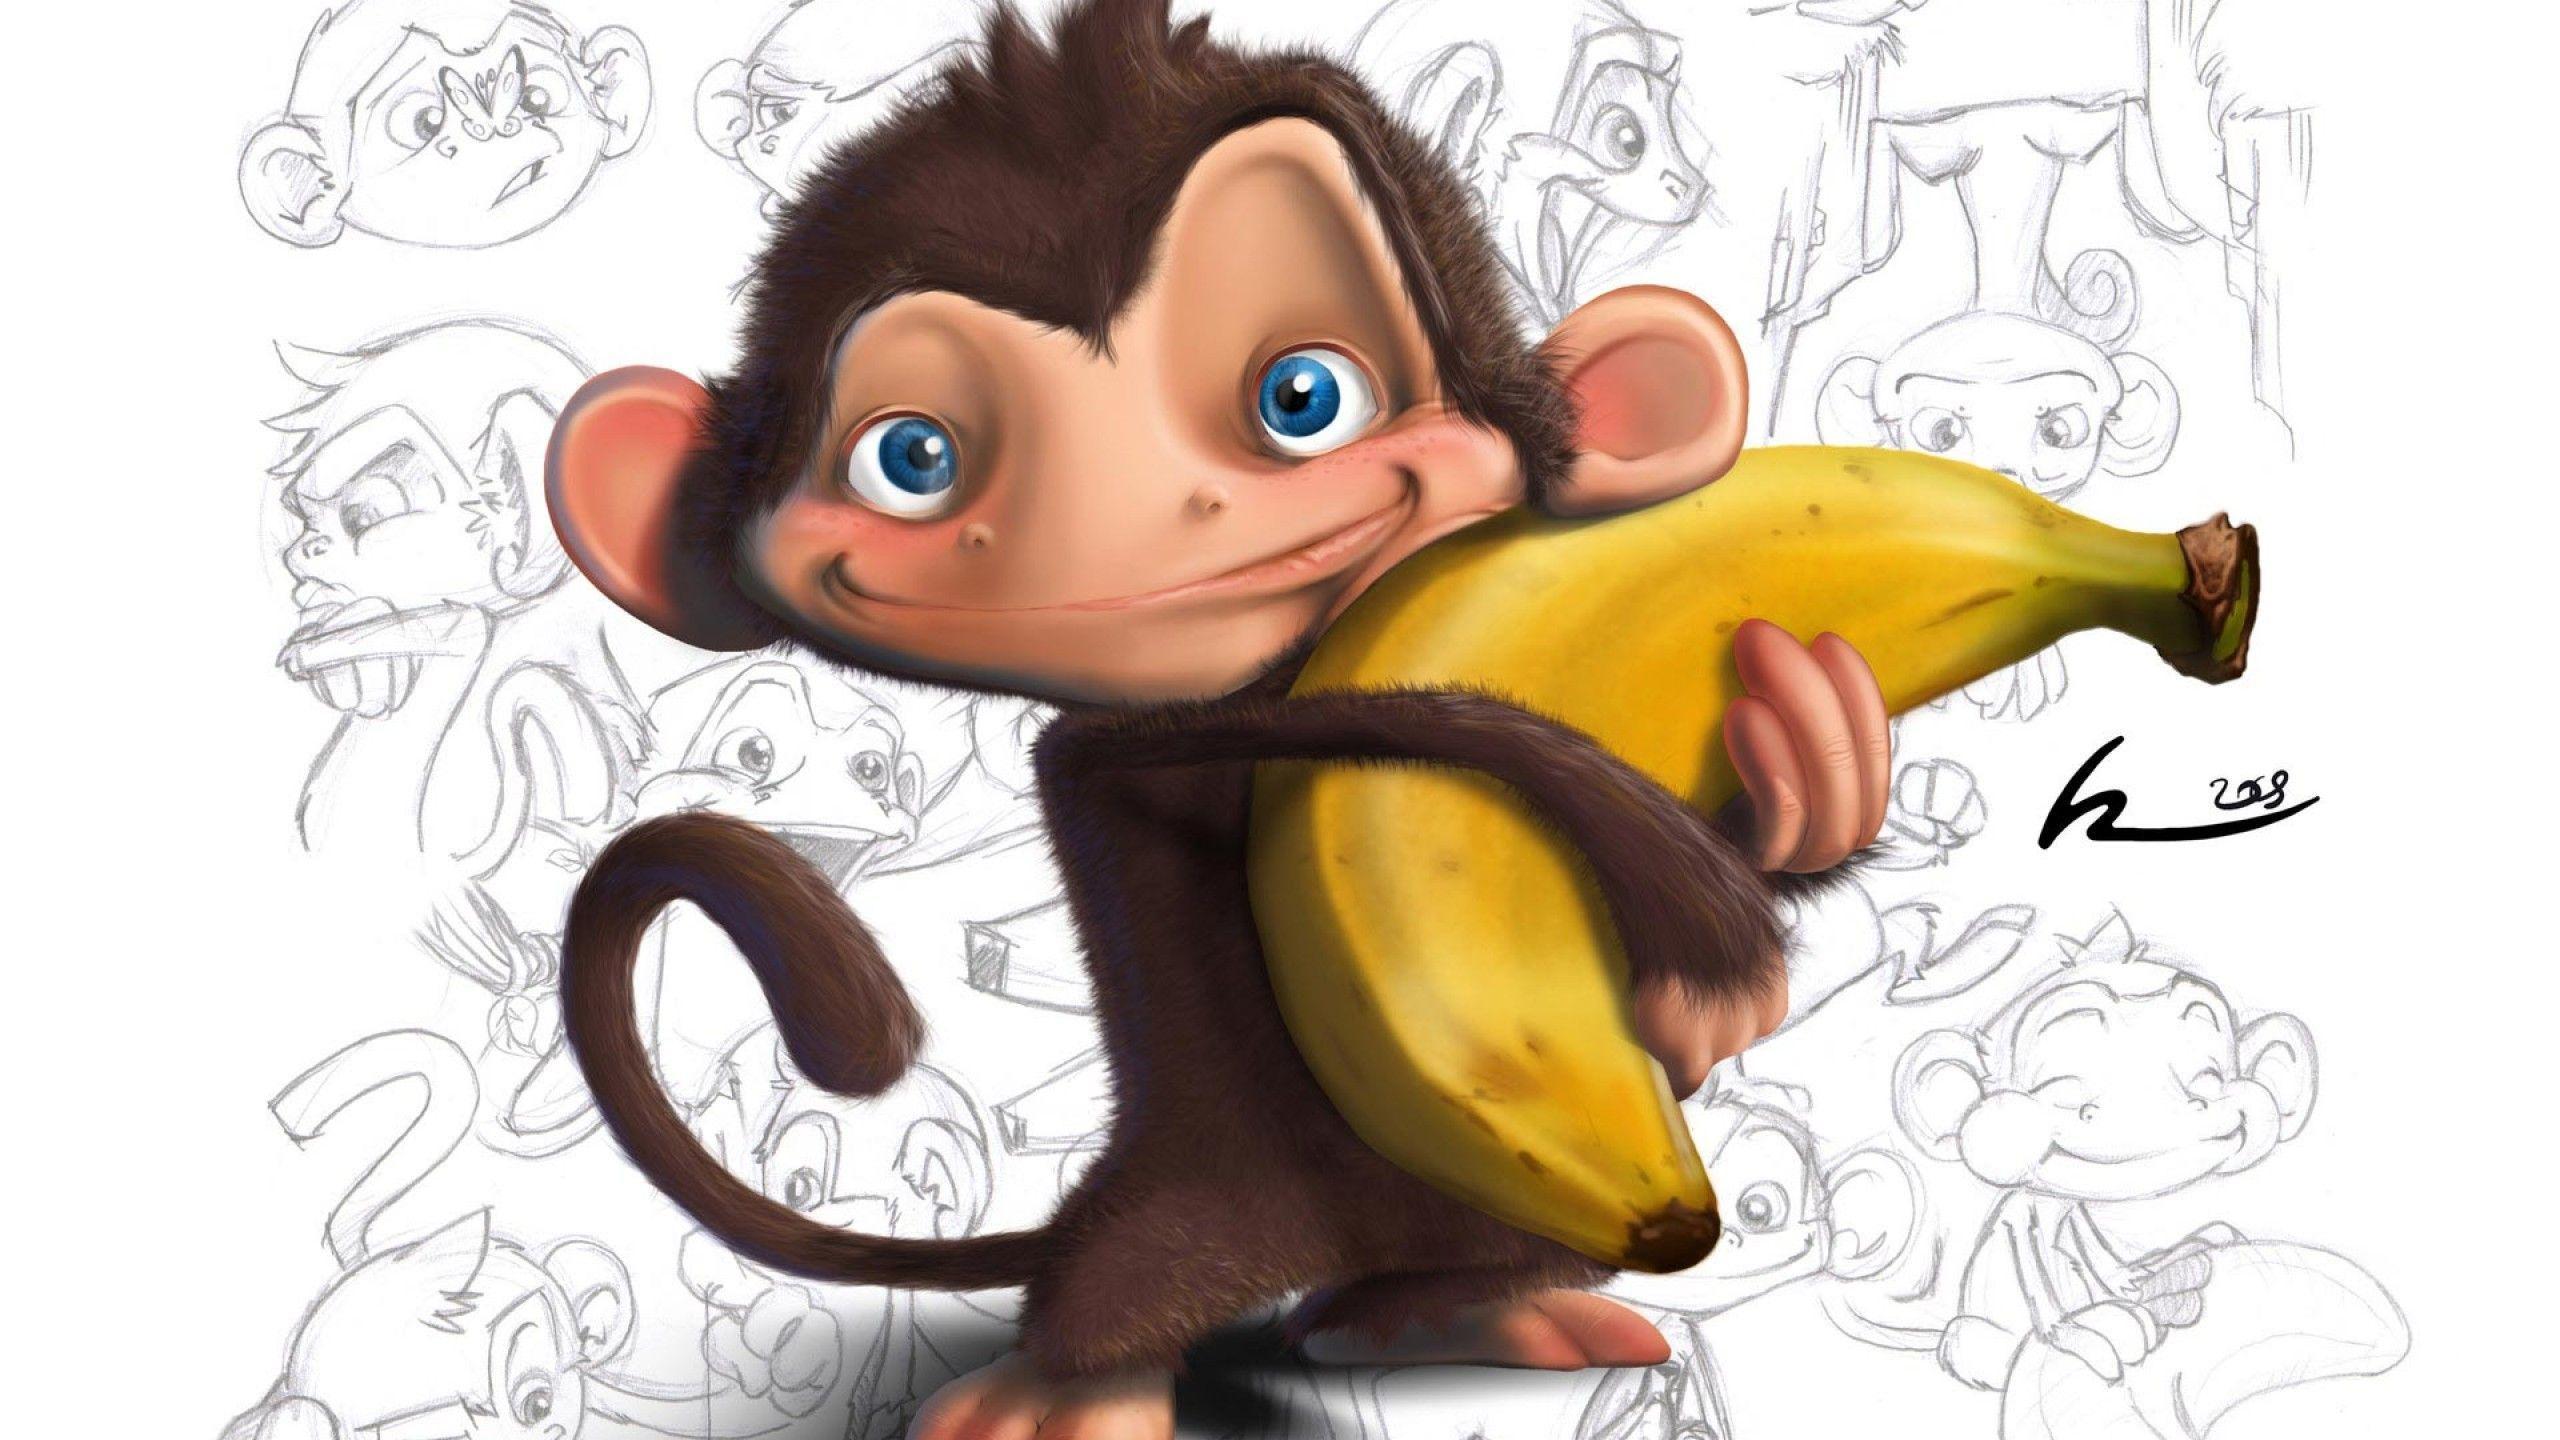 Cute Monkey Face, Monkey Meme, HD wallpaper